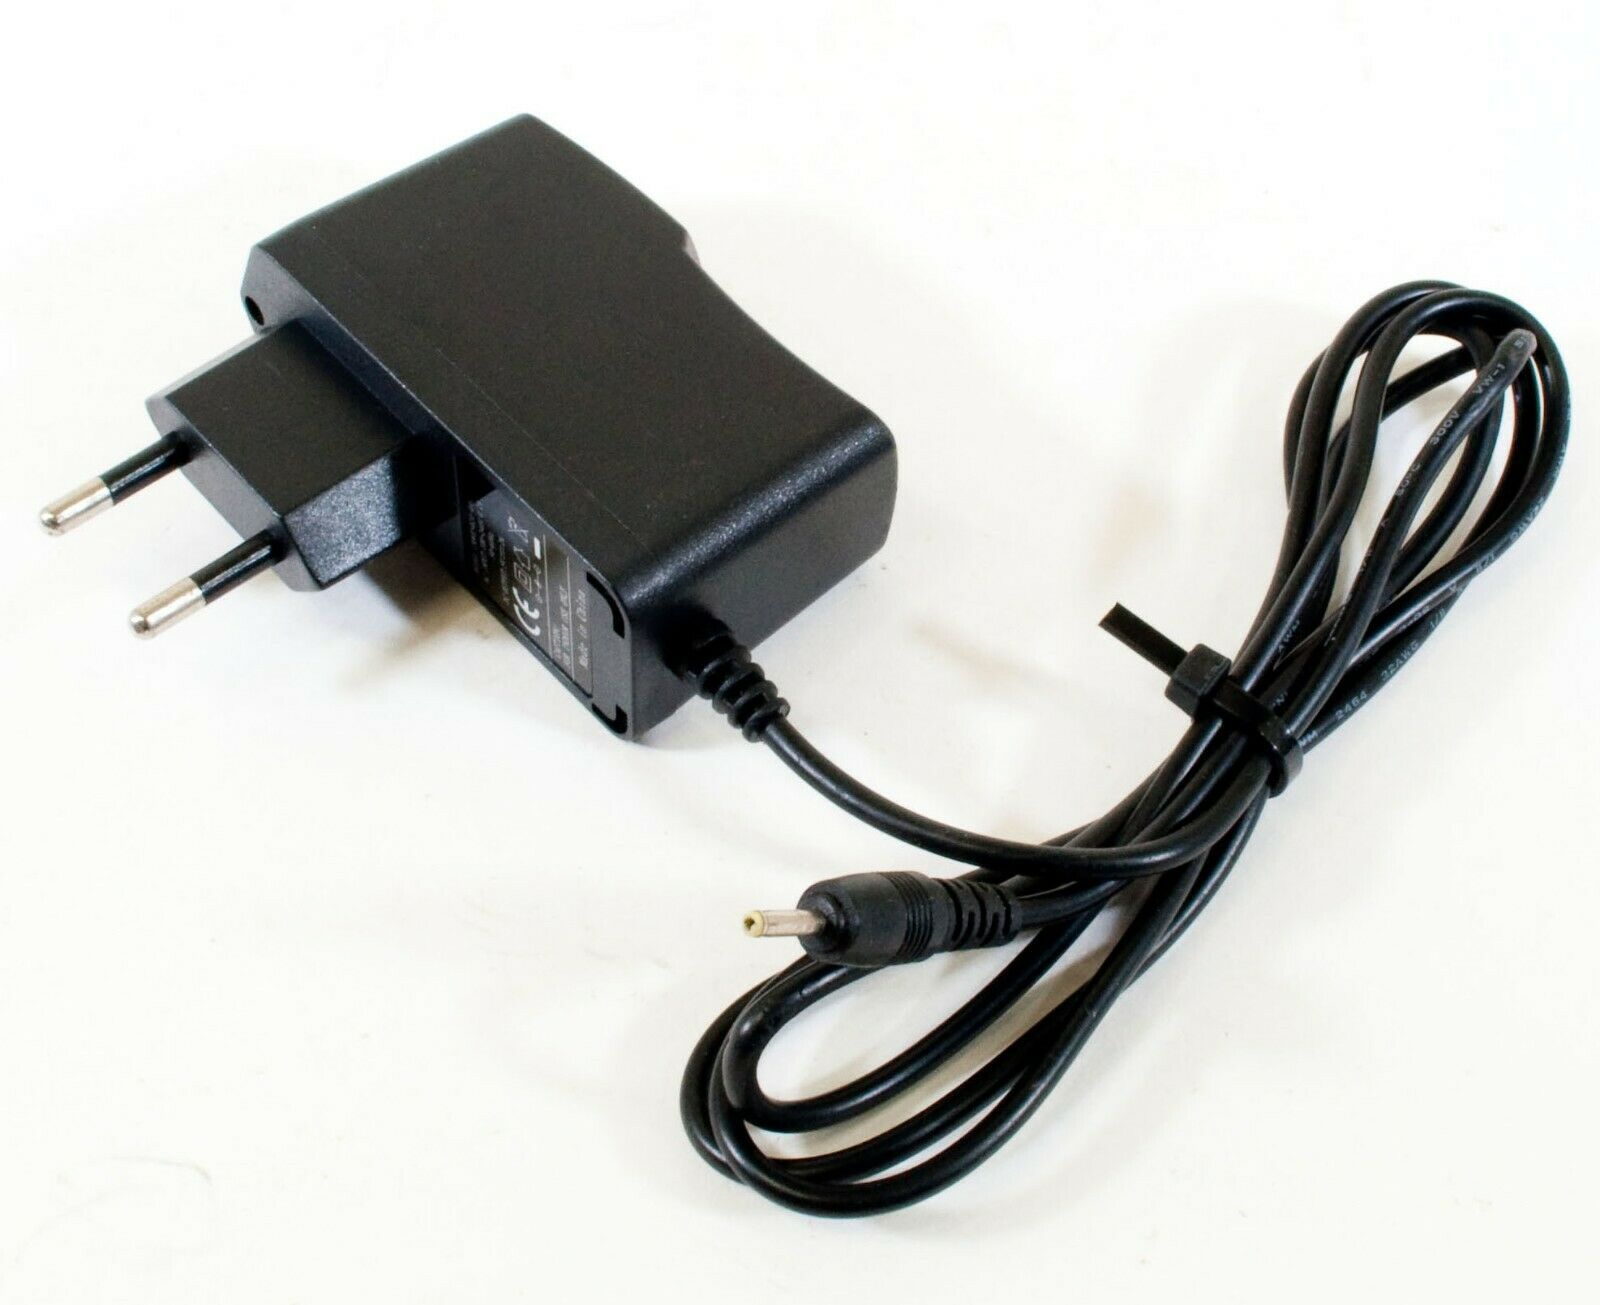 CMW05020-001 AC Adapter 5V 2A Original Power Supply Europlug Output Current: 2 A Voltage: 5 V Unit Type: Unit Model: